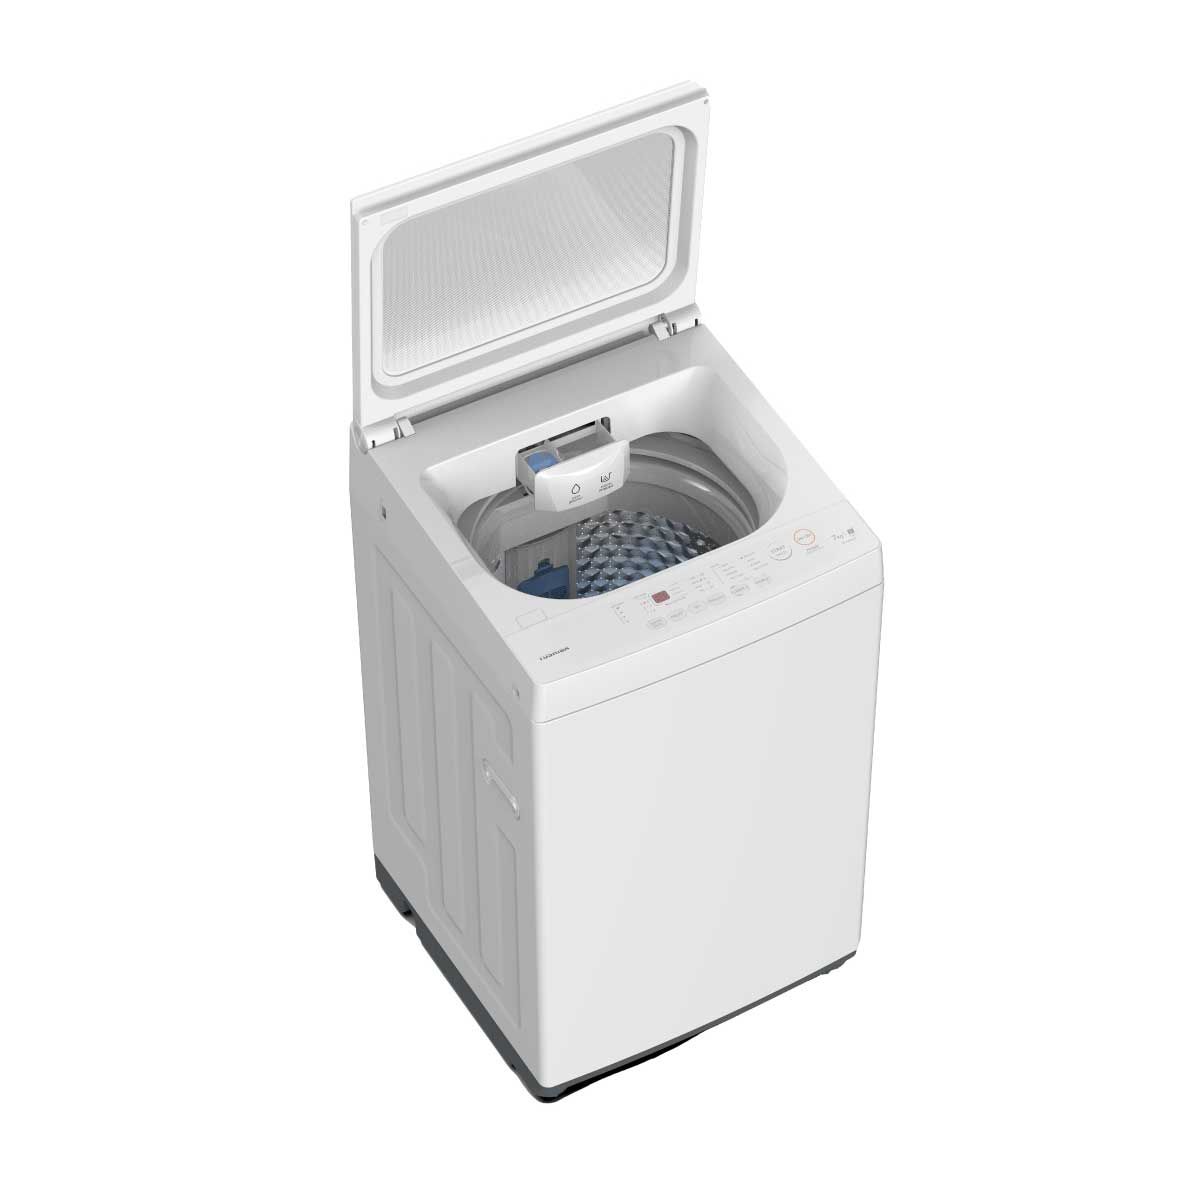 TOSHIBA เครื่องซักผ้าฝาบน 8KG สีขาว รุ่น AW-M901BT(WW)